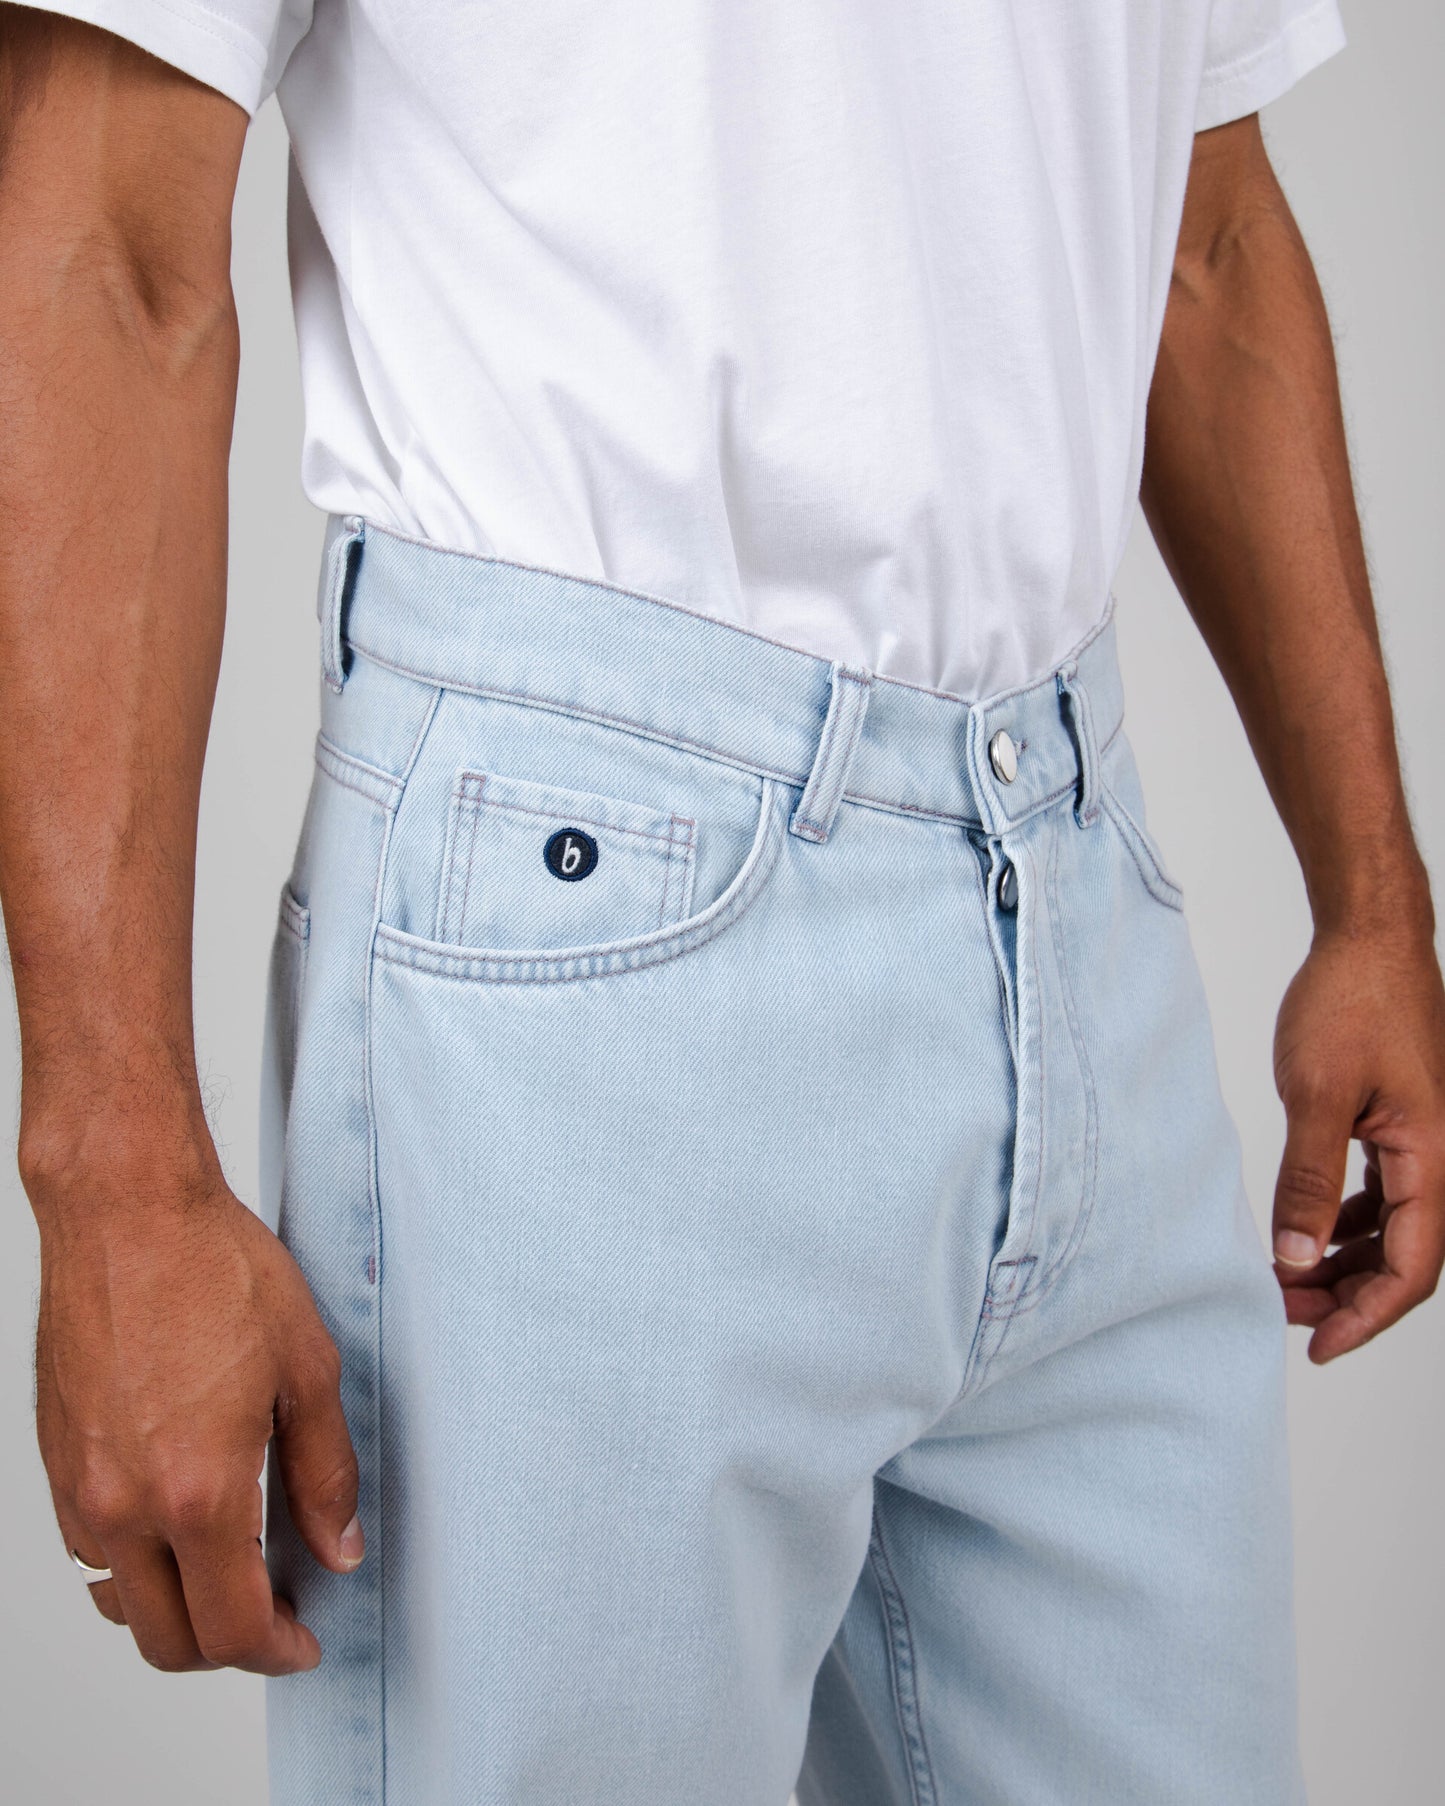 Pantalon 5 Pocket - Coton et Tencel